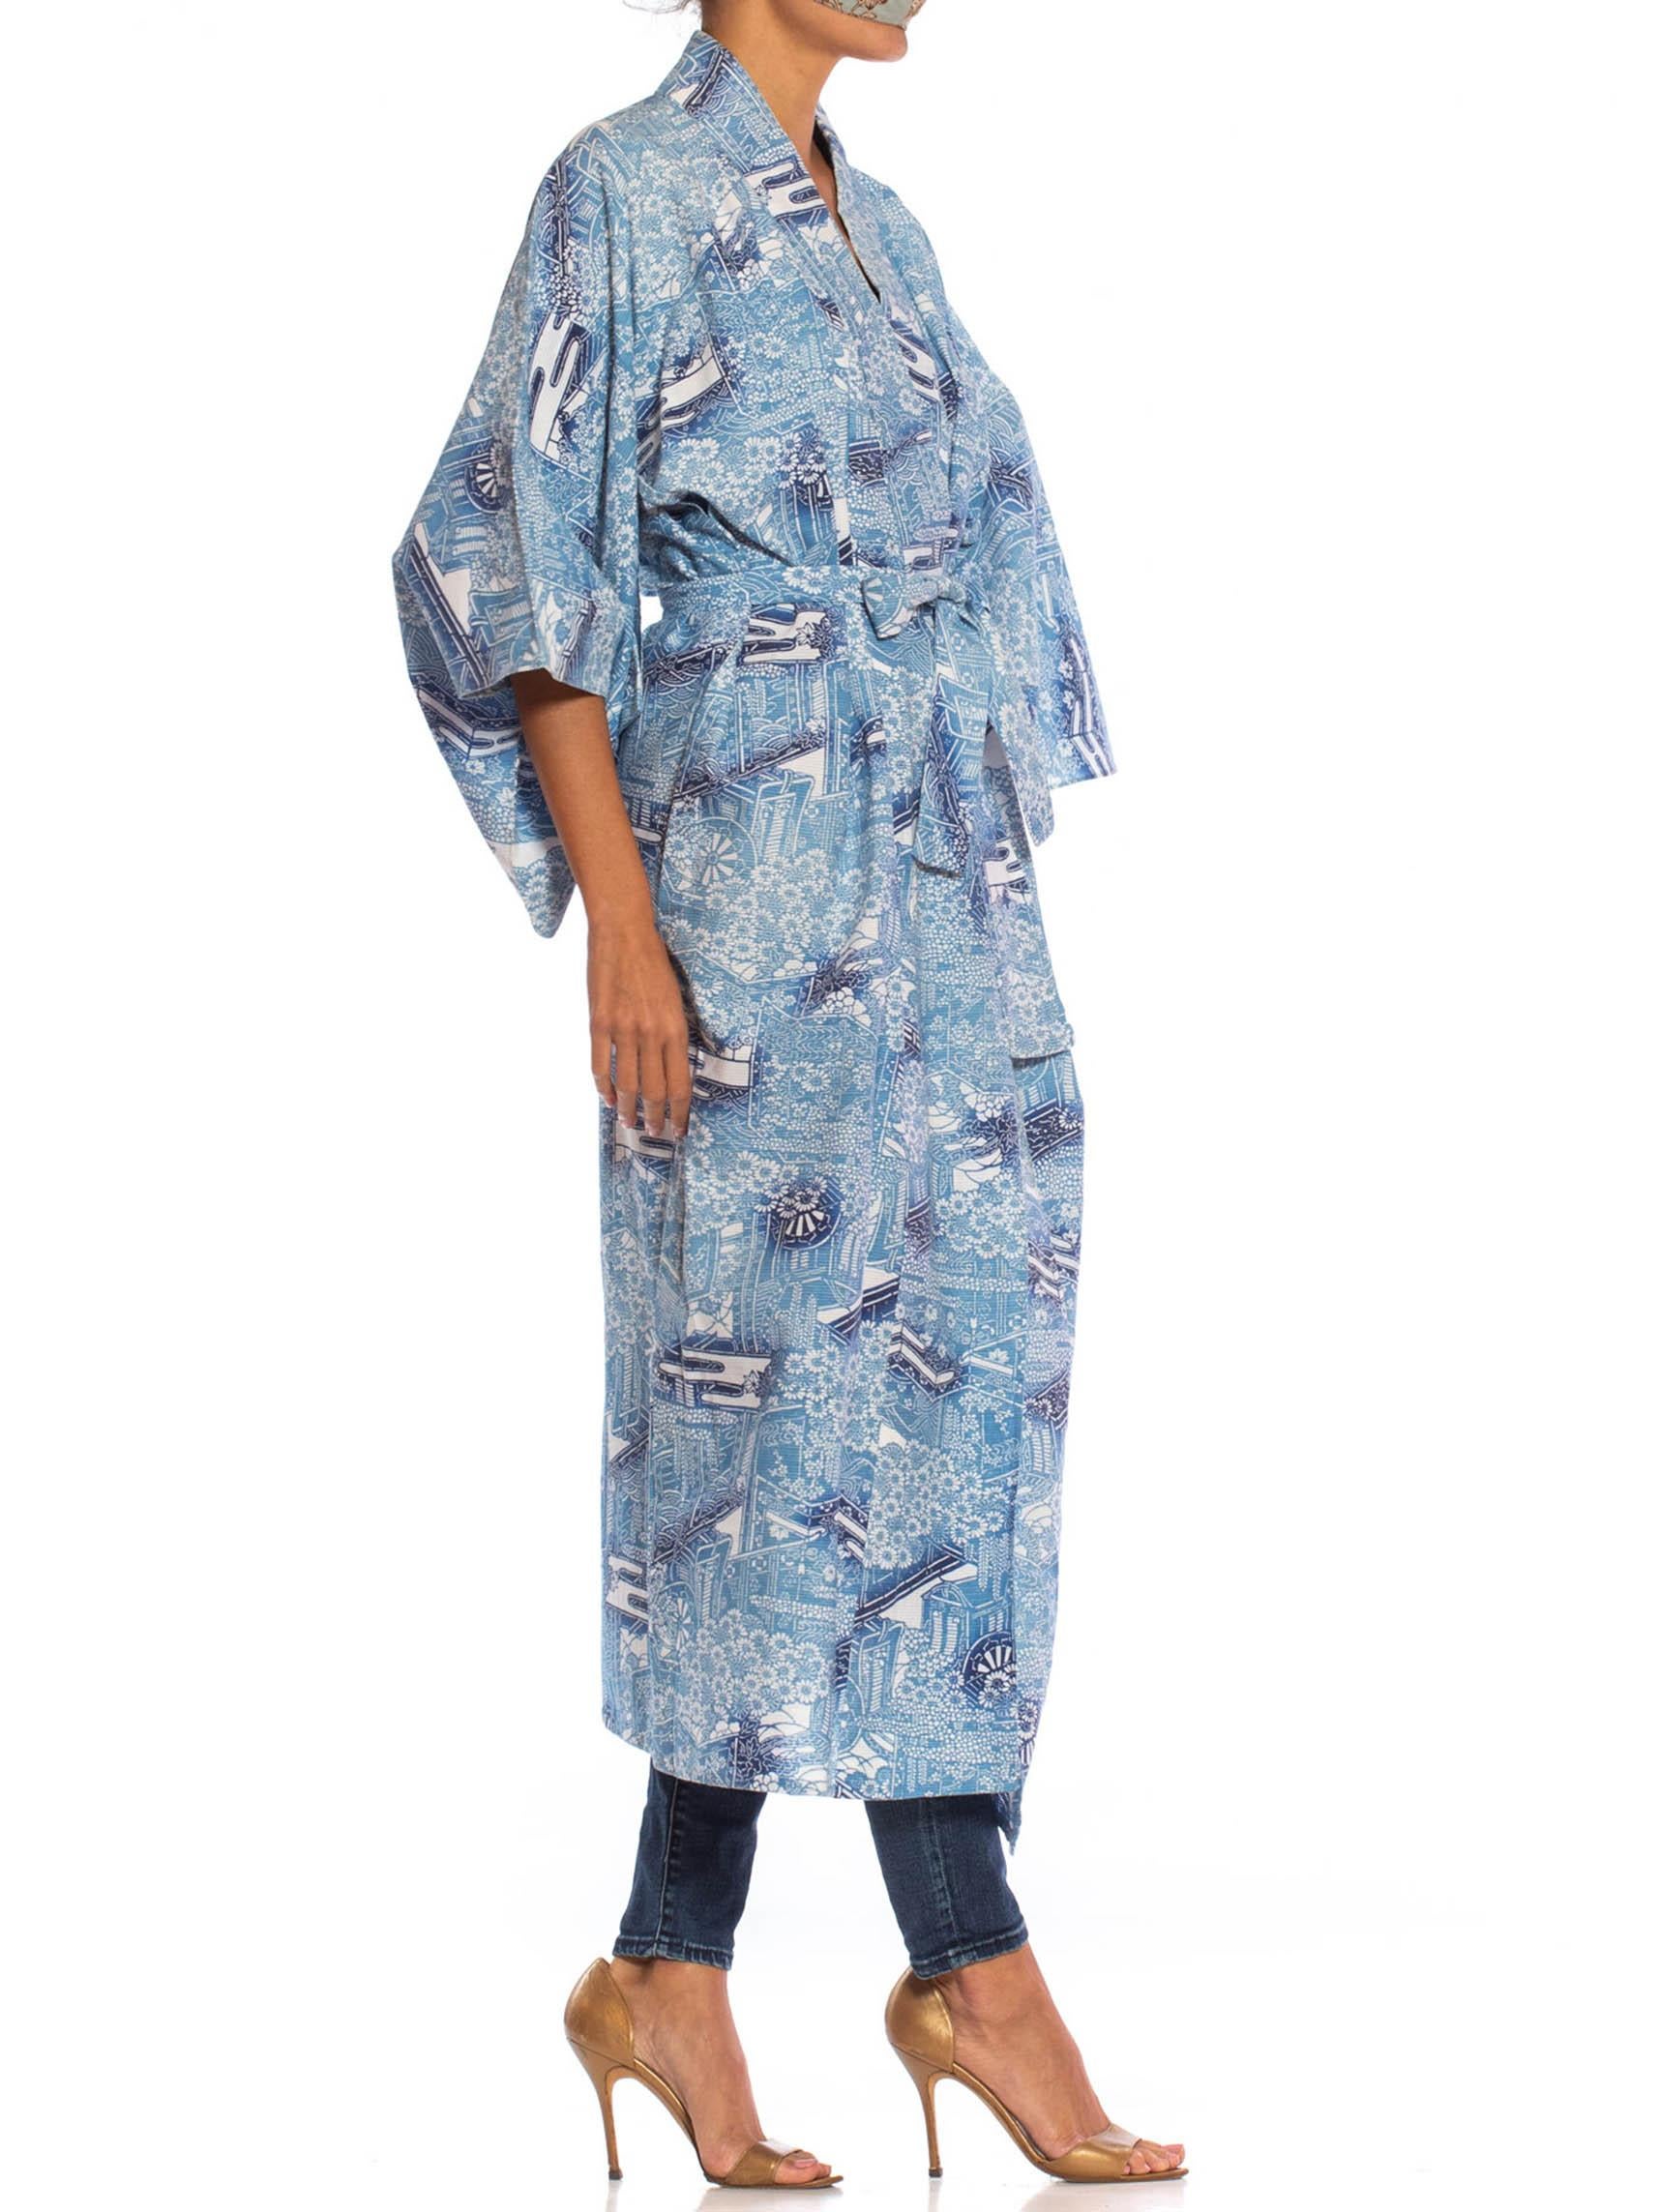 white and blue kimono